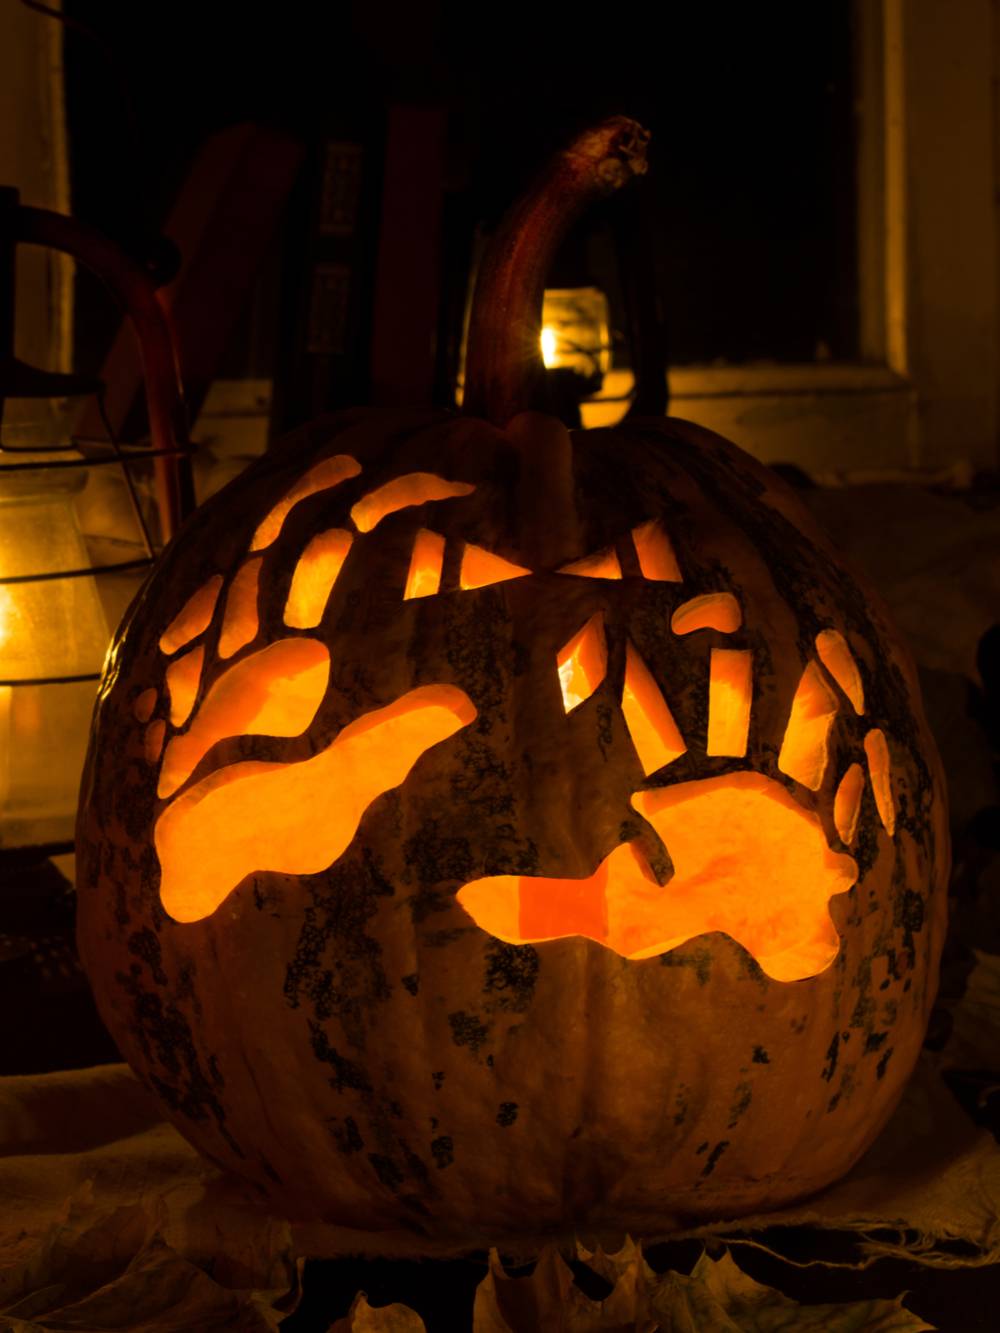 A skeleton pumpkin carving featuring skeleton hands.